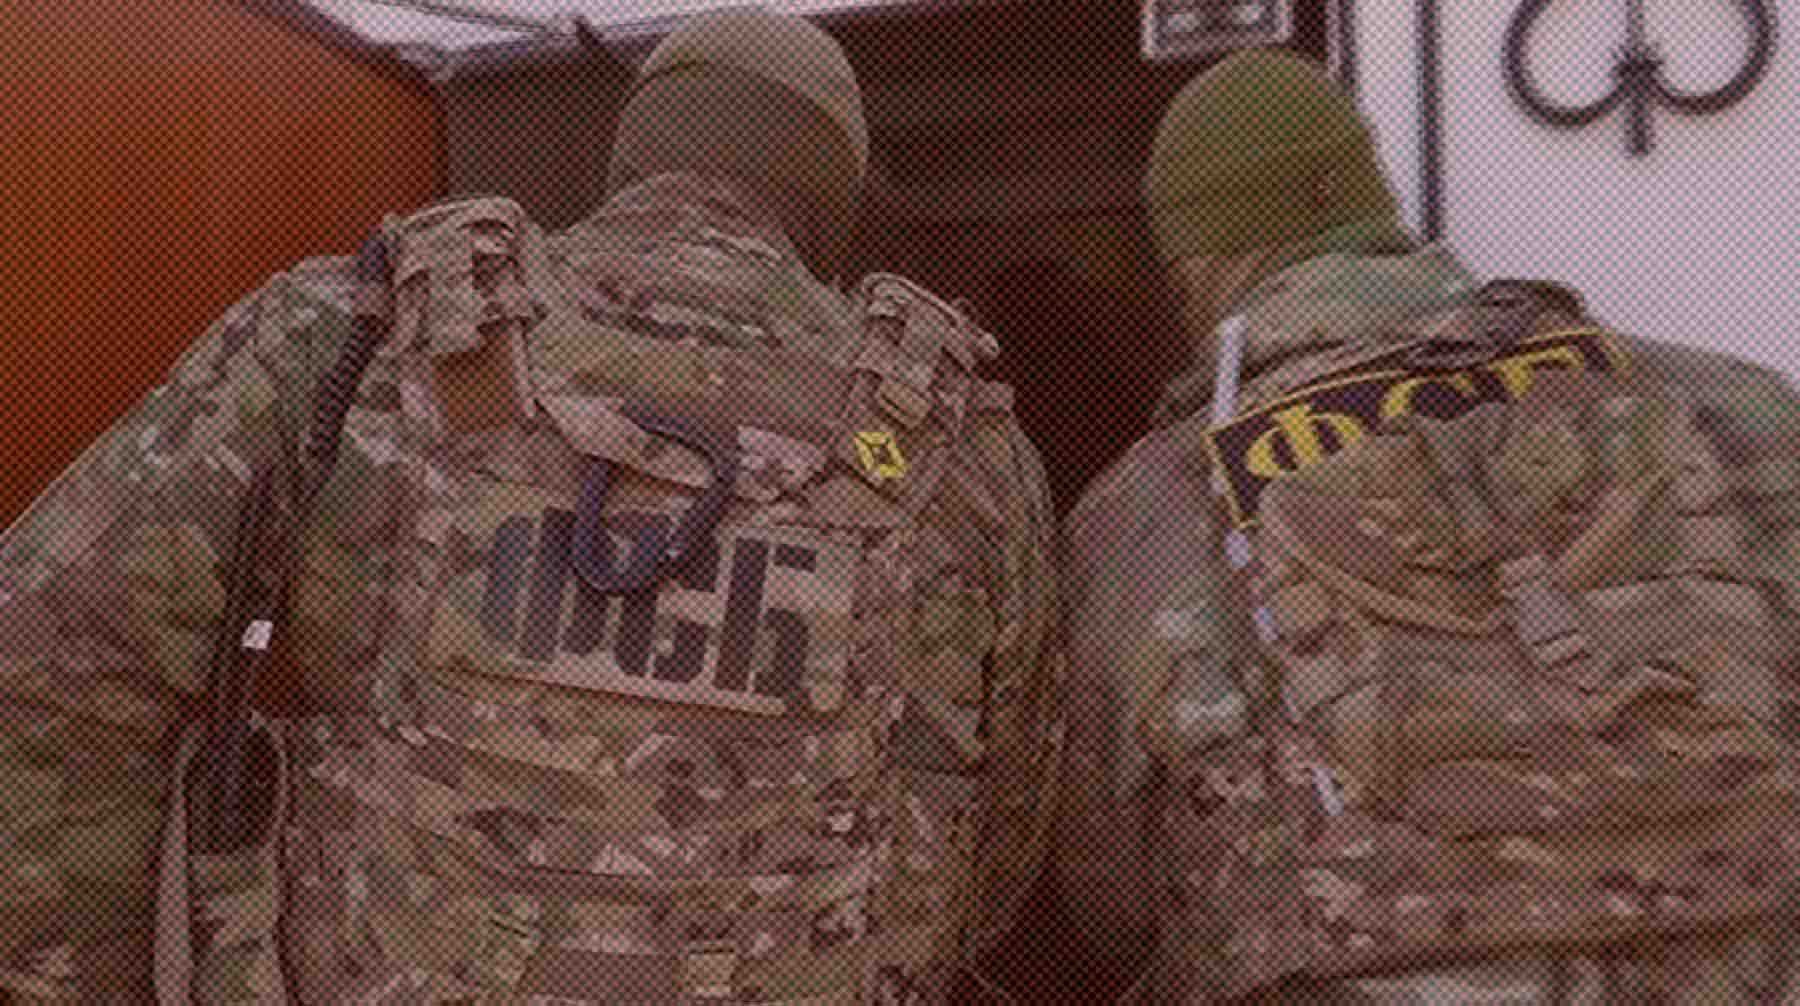 Dailystorm - ФСБ предотвратила покушение украинских спецслужб на Собчак и Симоньян